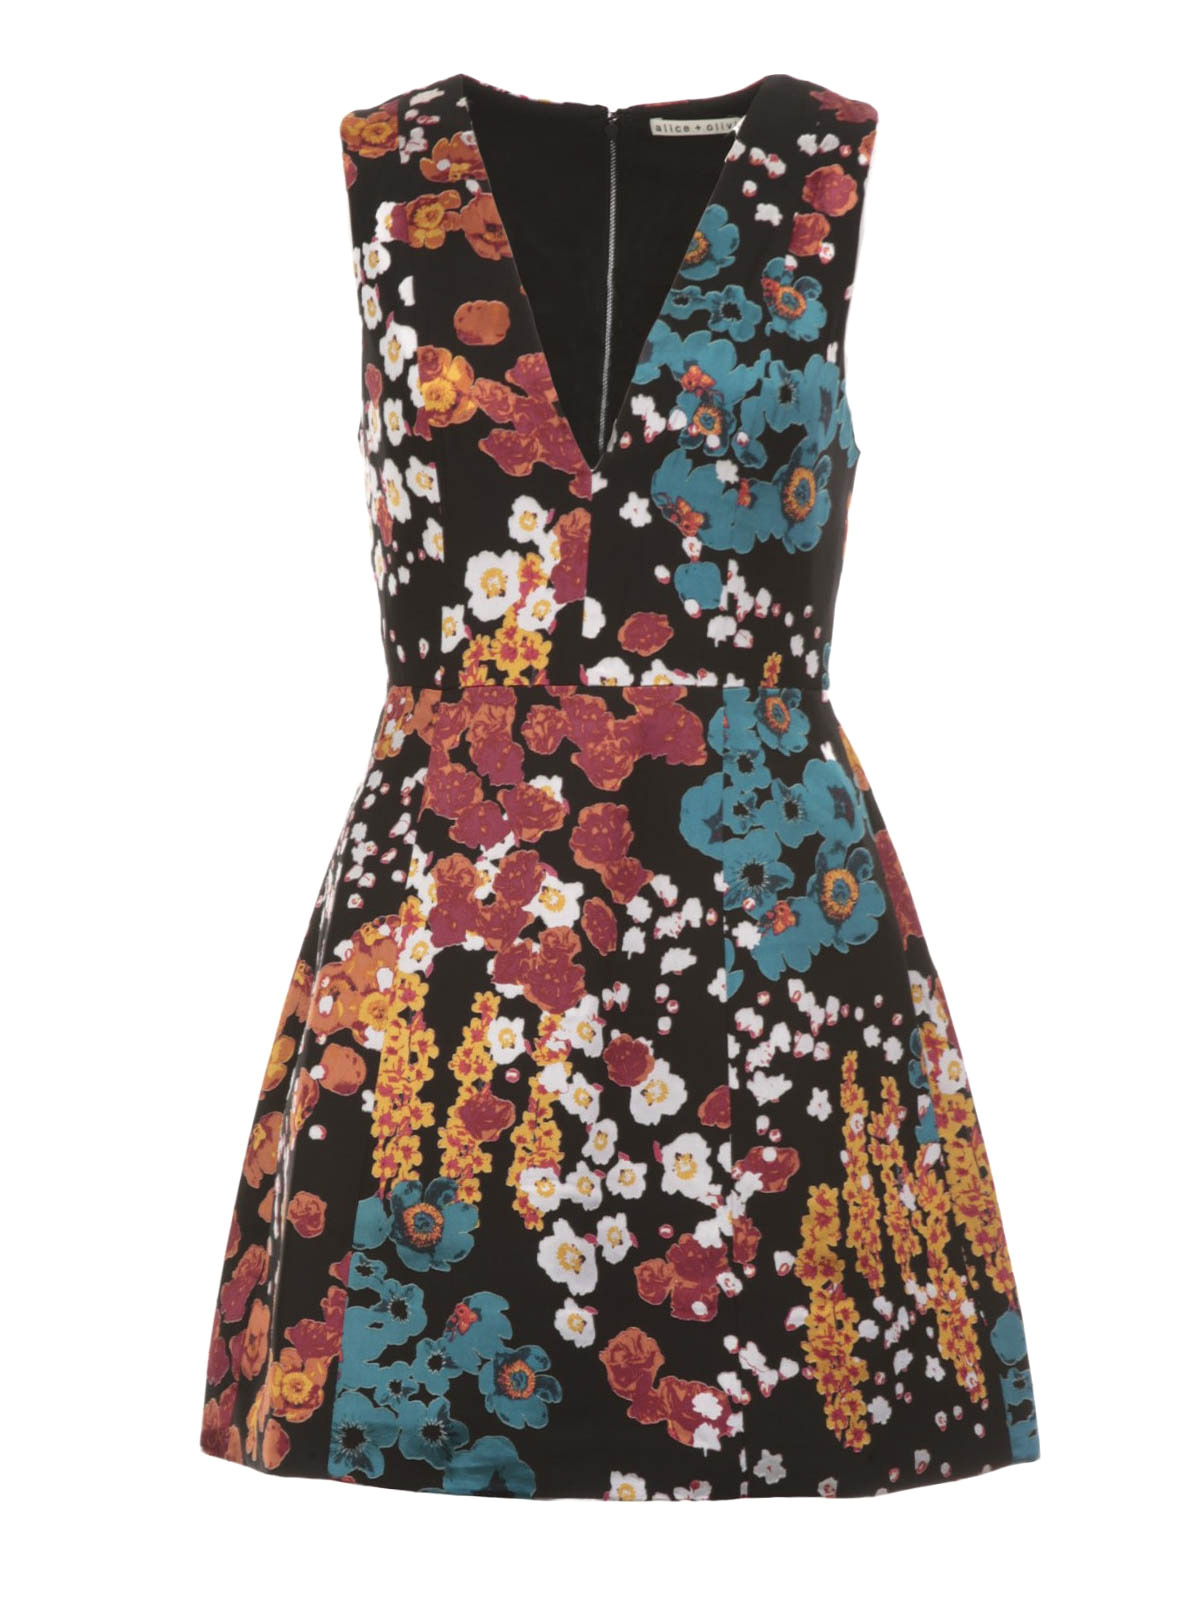 Patty Lantern floral mini dress ...